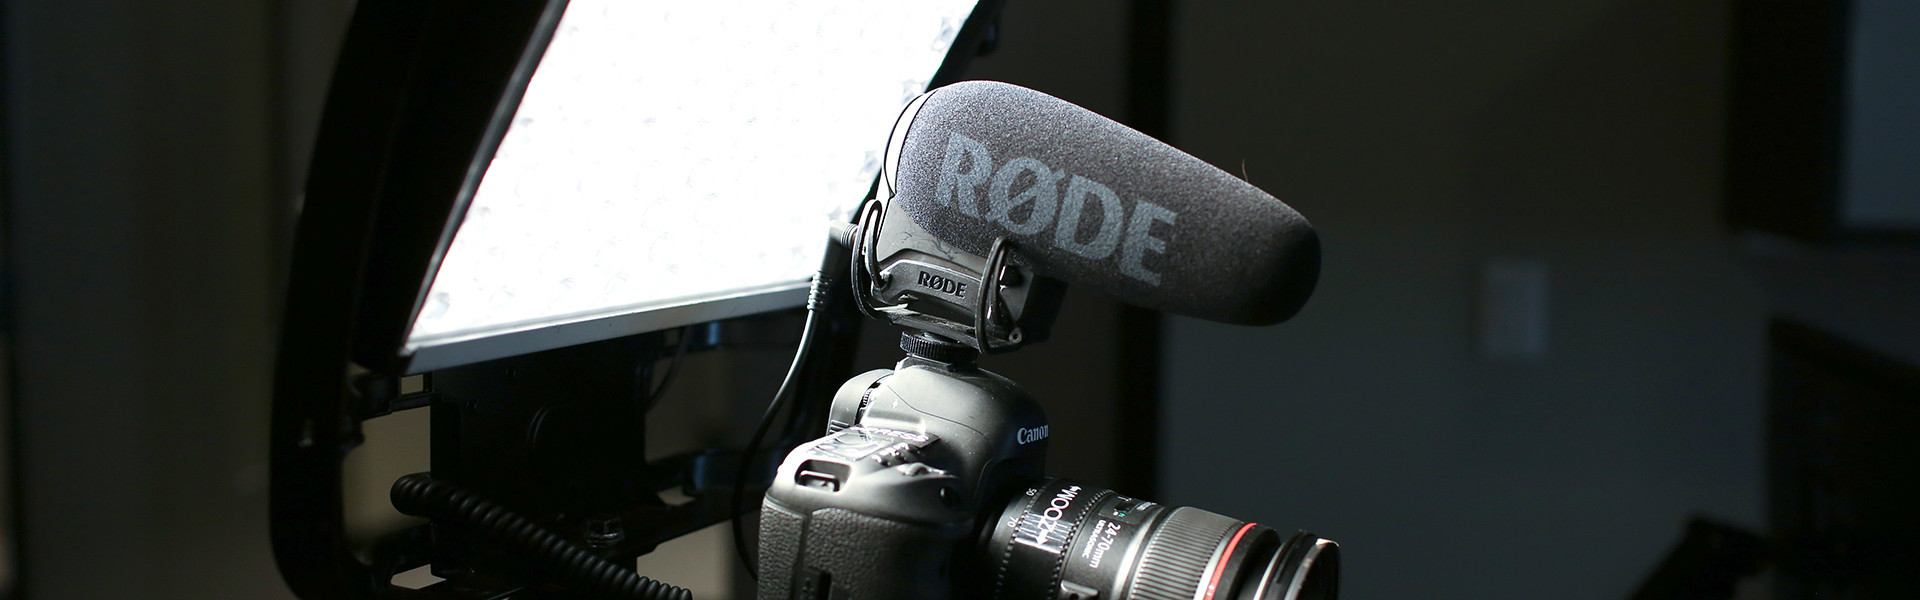 Header image for article AbelCine's Remote Production Kits Deliver for 2020 Emmy Broadcast